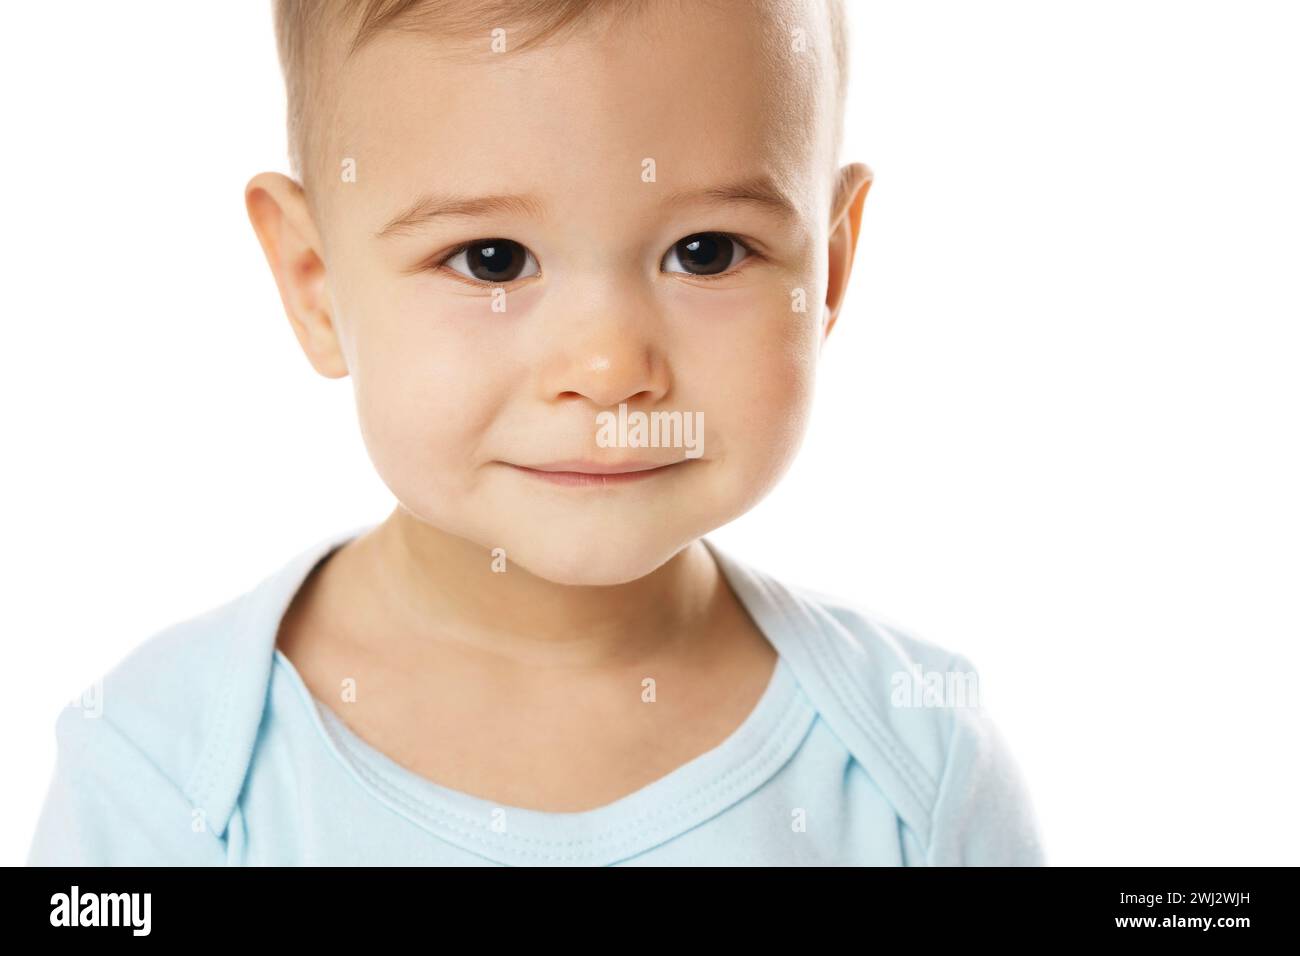 Closeuo-Aufnahme des lächelnden Gesichts eines kleinen Jungen im Strampler. Stockfoto